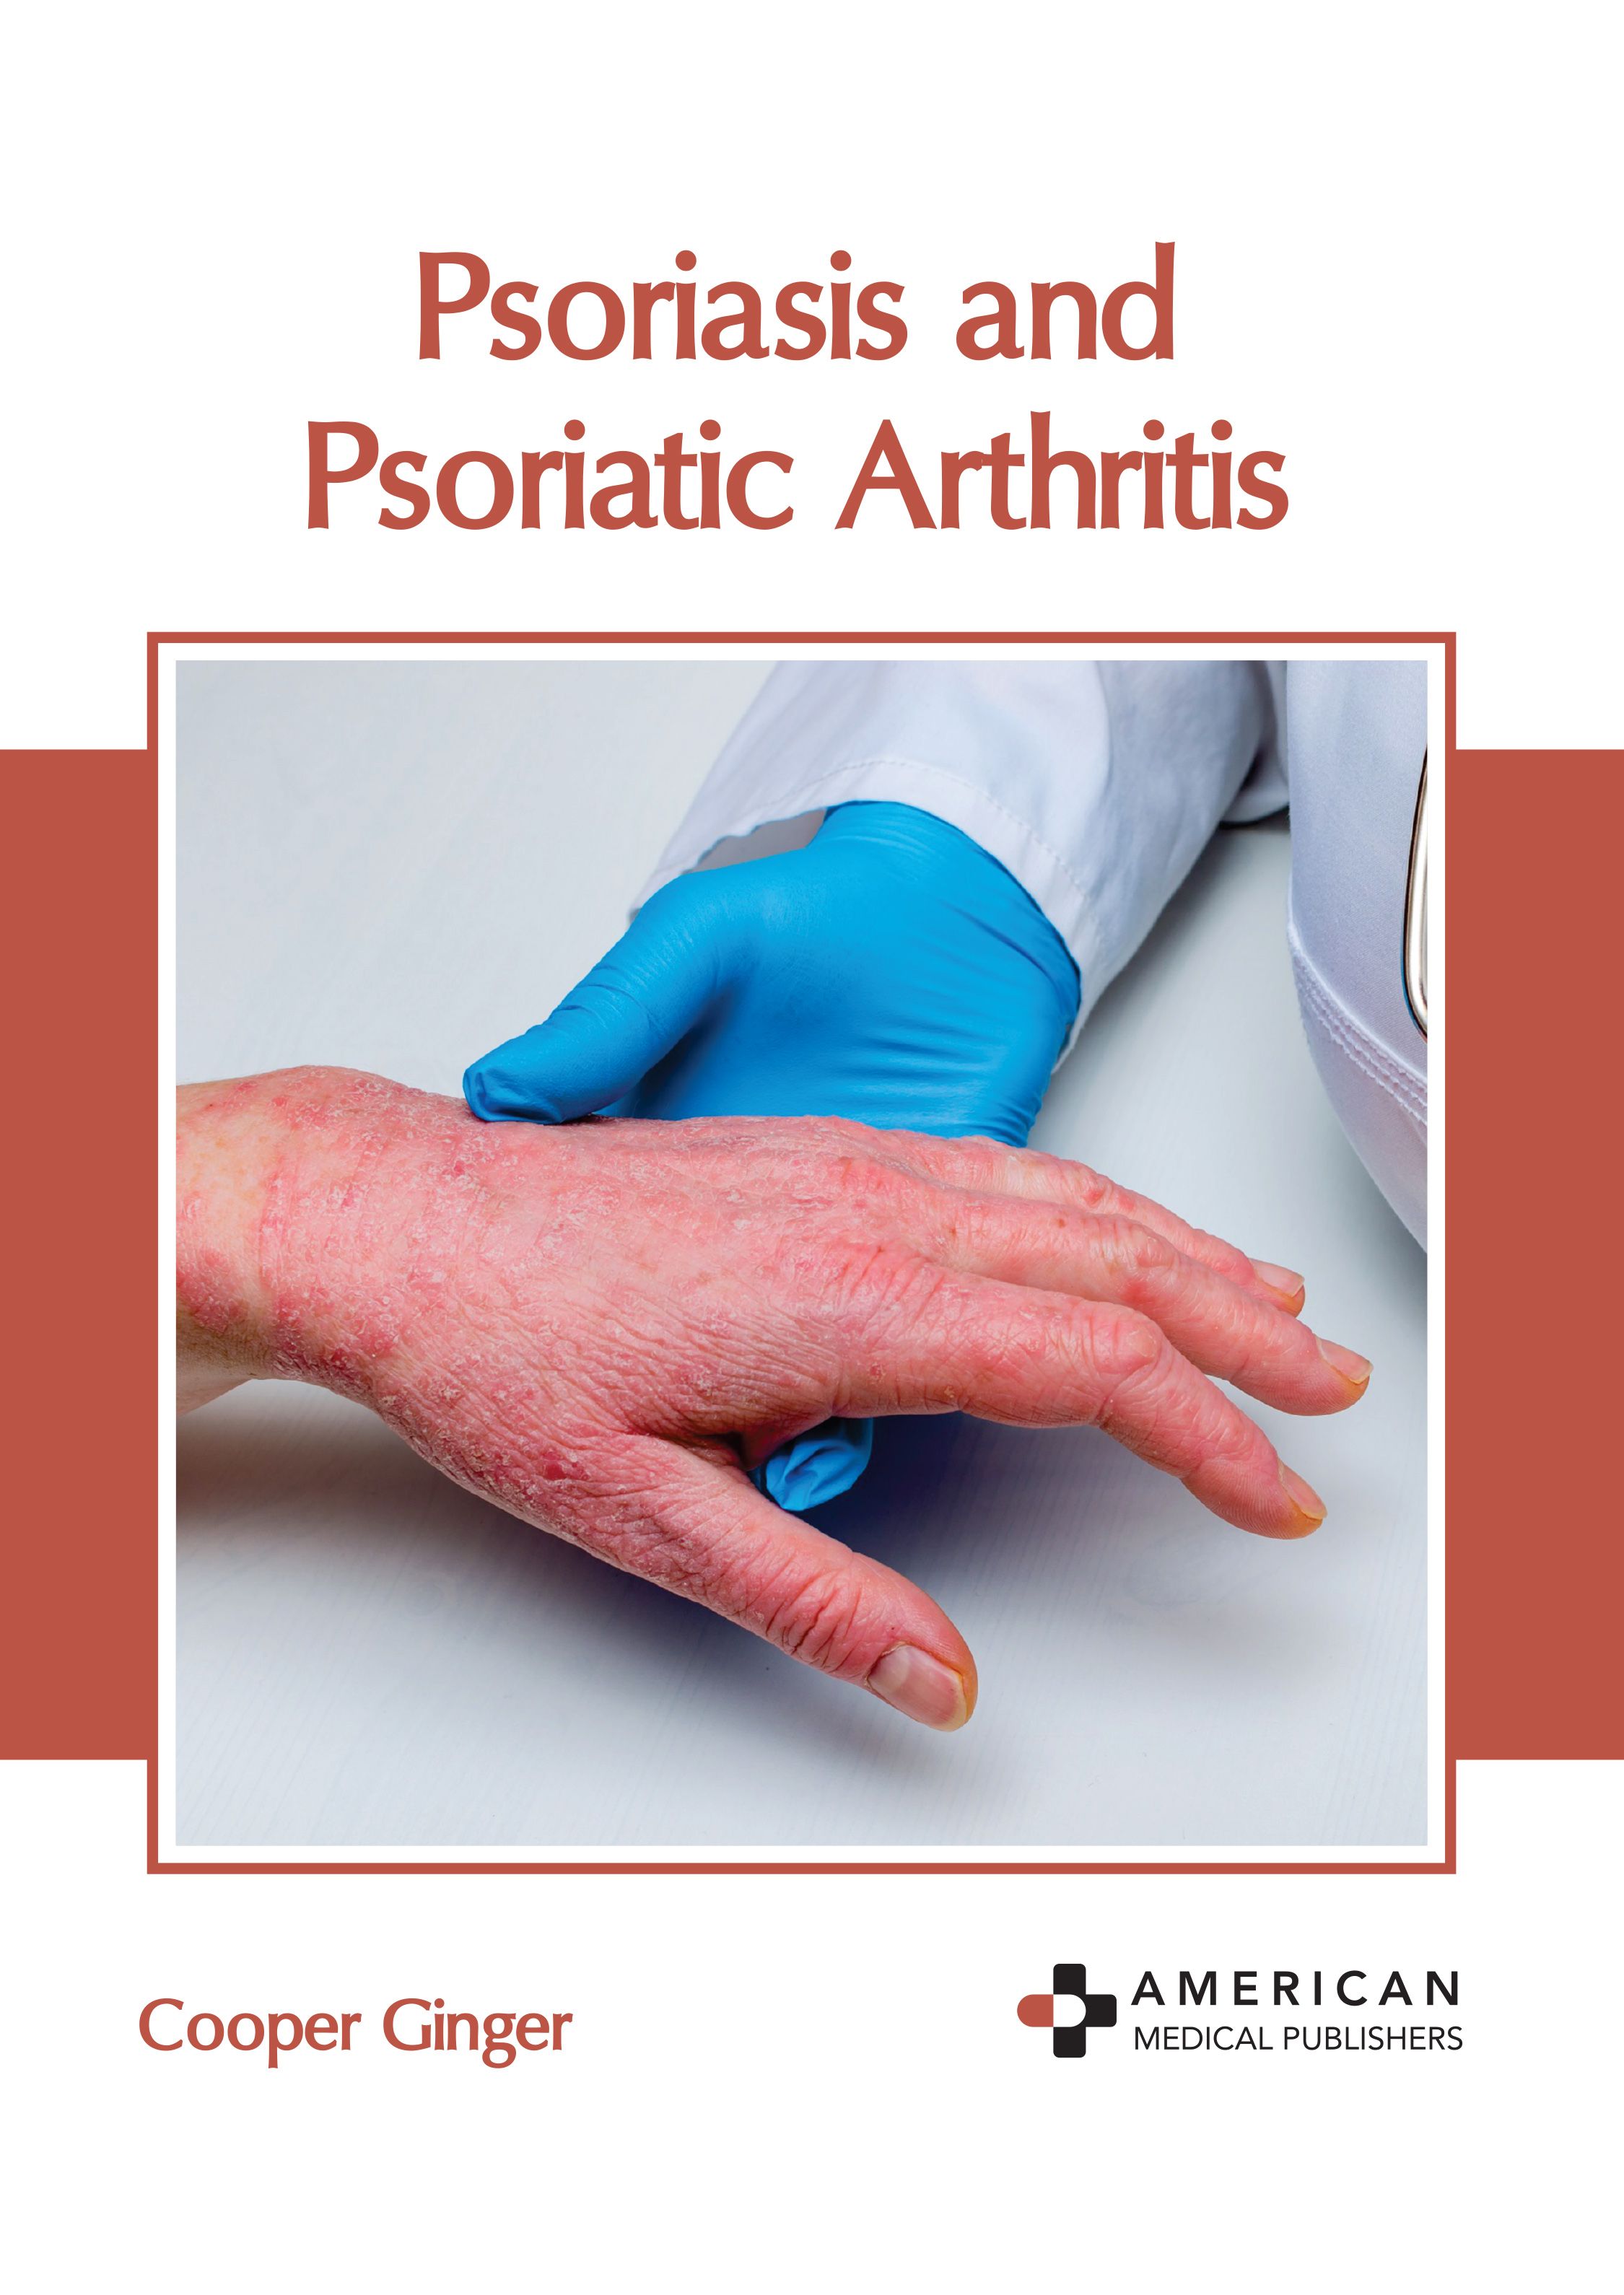 PSORIASIS AND PSORIATIC ARTHRITIS